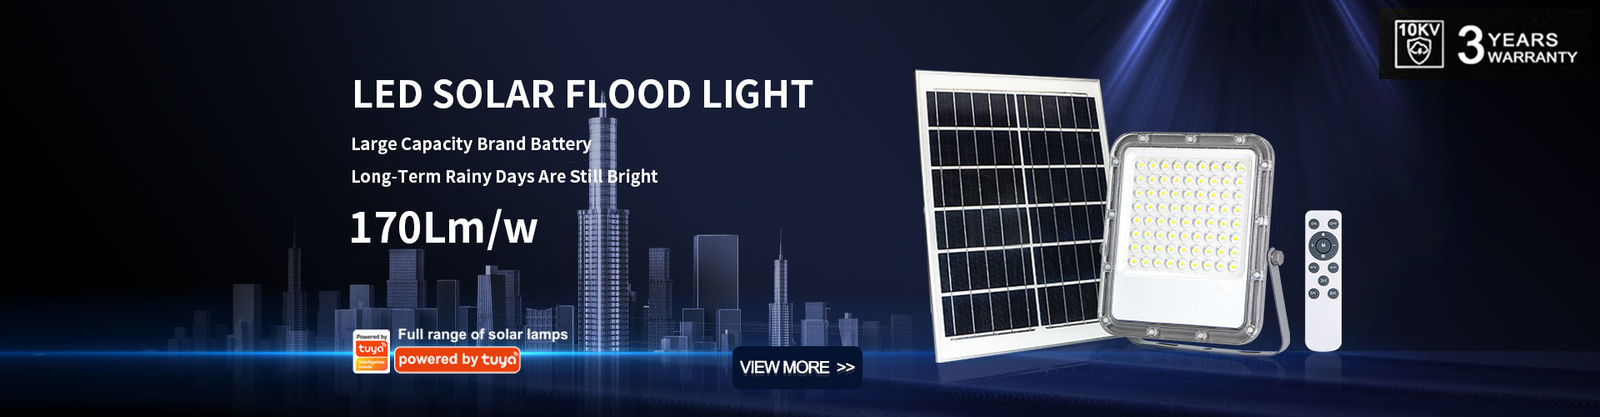 chất lượng Đèn đường LED chạy bằng năng lượng mặt trời nhà máy sản xuất